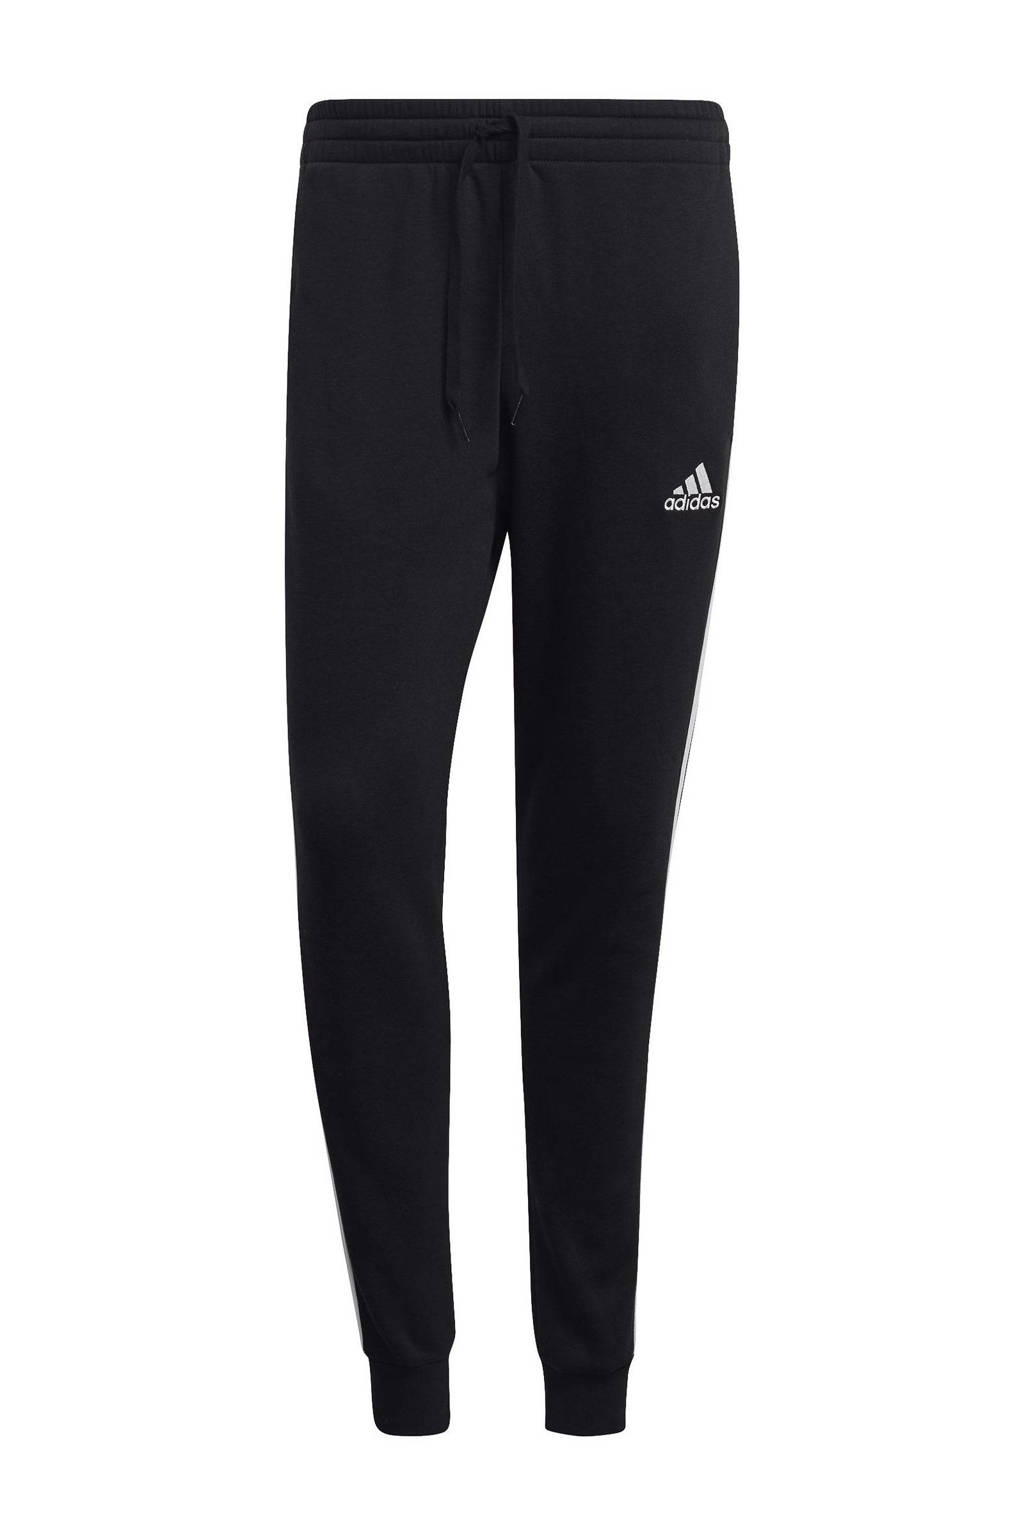 adidas Performance   fleece joggingbroek zwart/wit